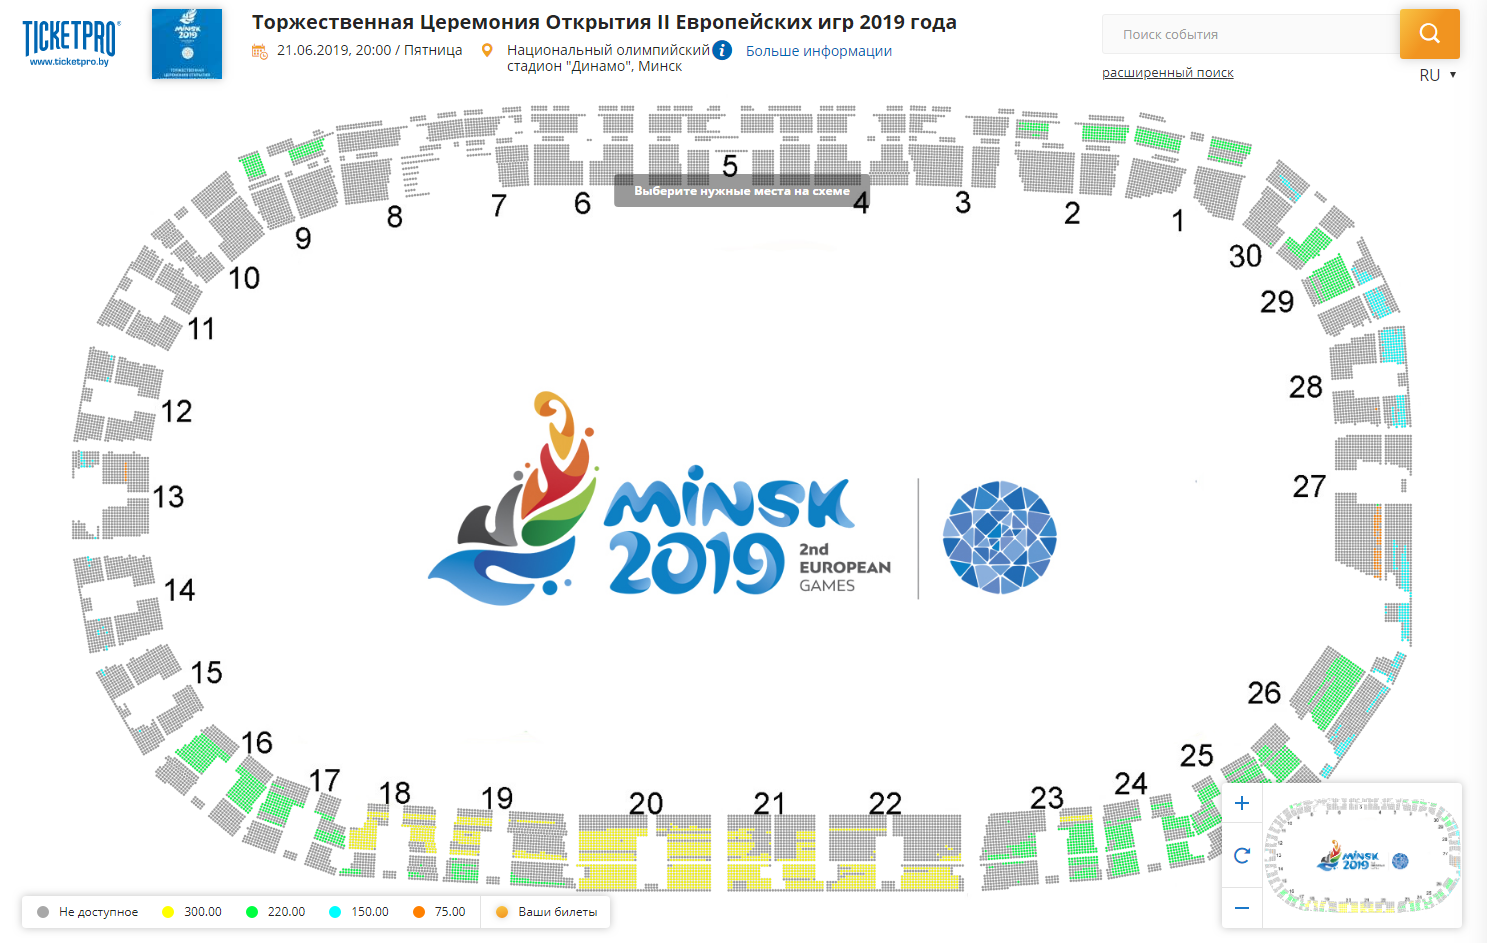 Количество свободных мест на торжественную церемонию открытия II Европейских игр 2019 года